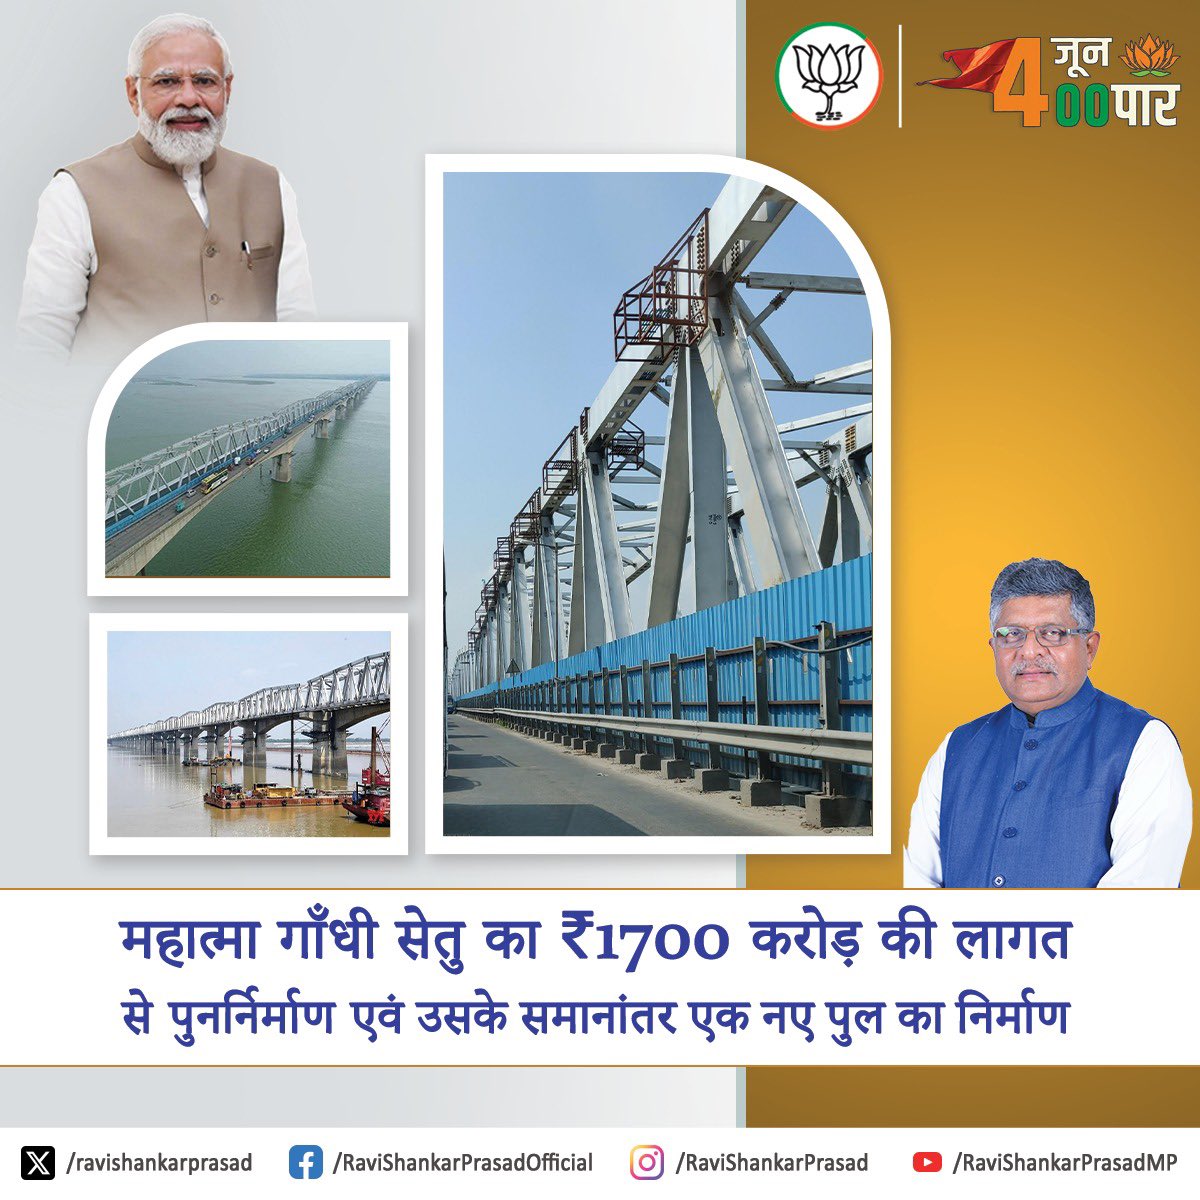 मोदी है तो मुमकिन है! महात्मा गाँधी सेतु का 1700 करोड़ रुपए की लागत से पुनर्निर्माण एवं उसके समानांतर एक नए पुल का निर्माण! #PhirEkBaarModiSarkar #PatnaSahib